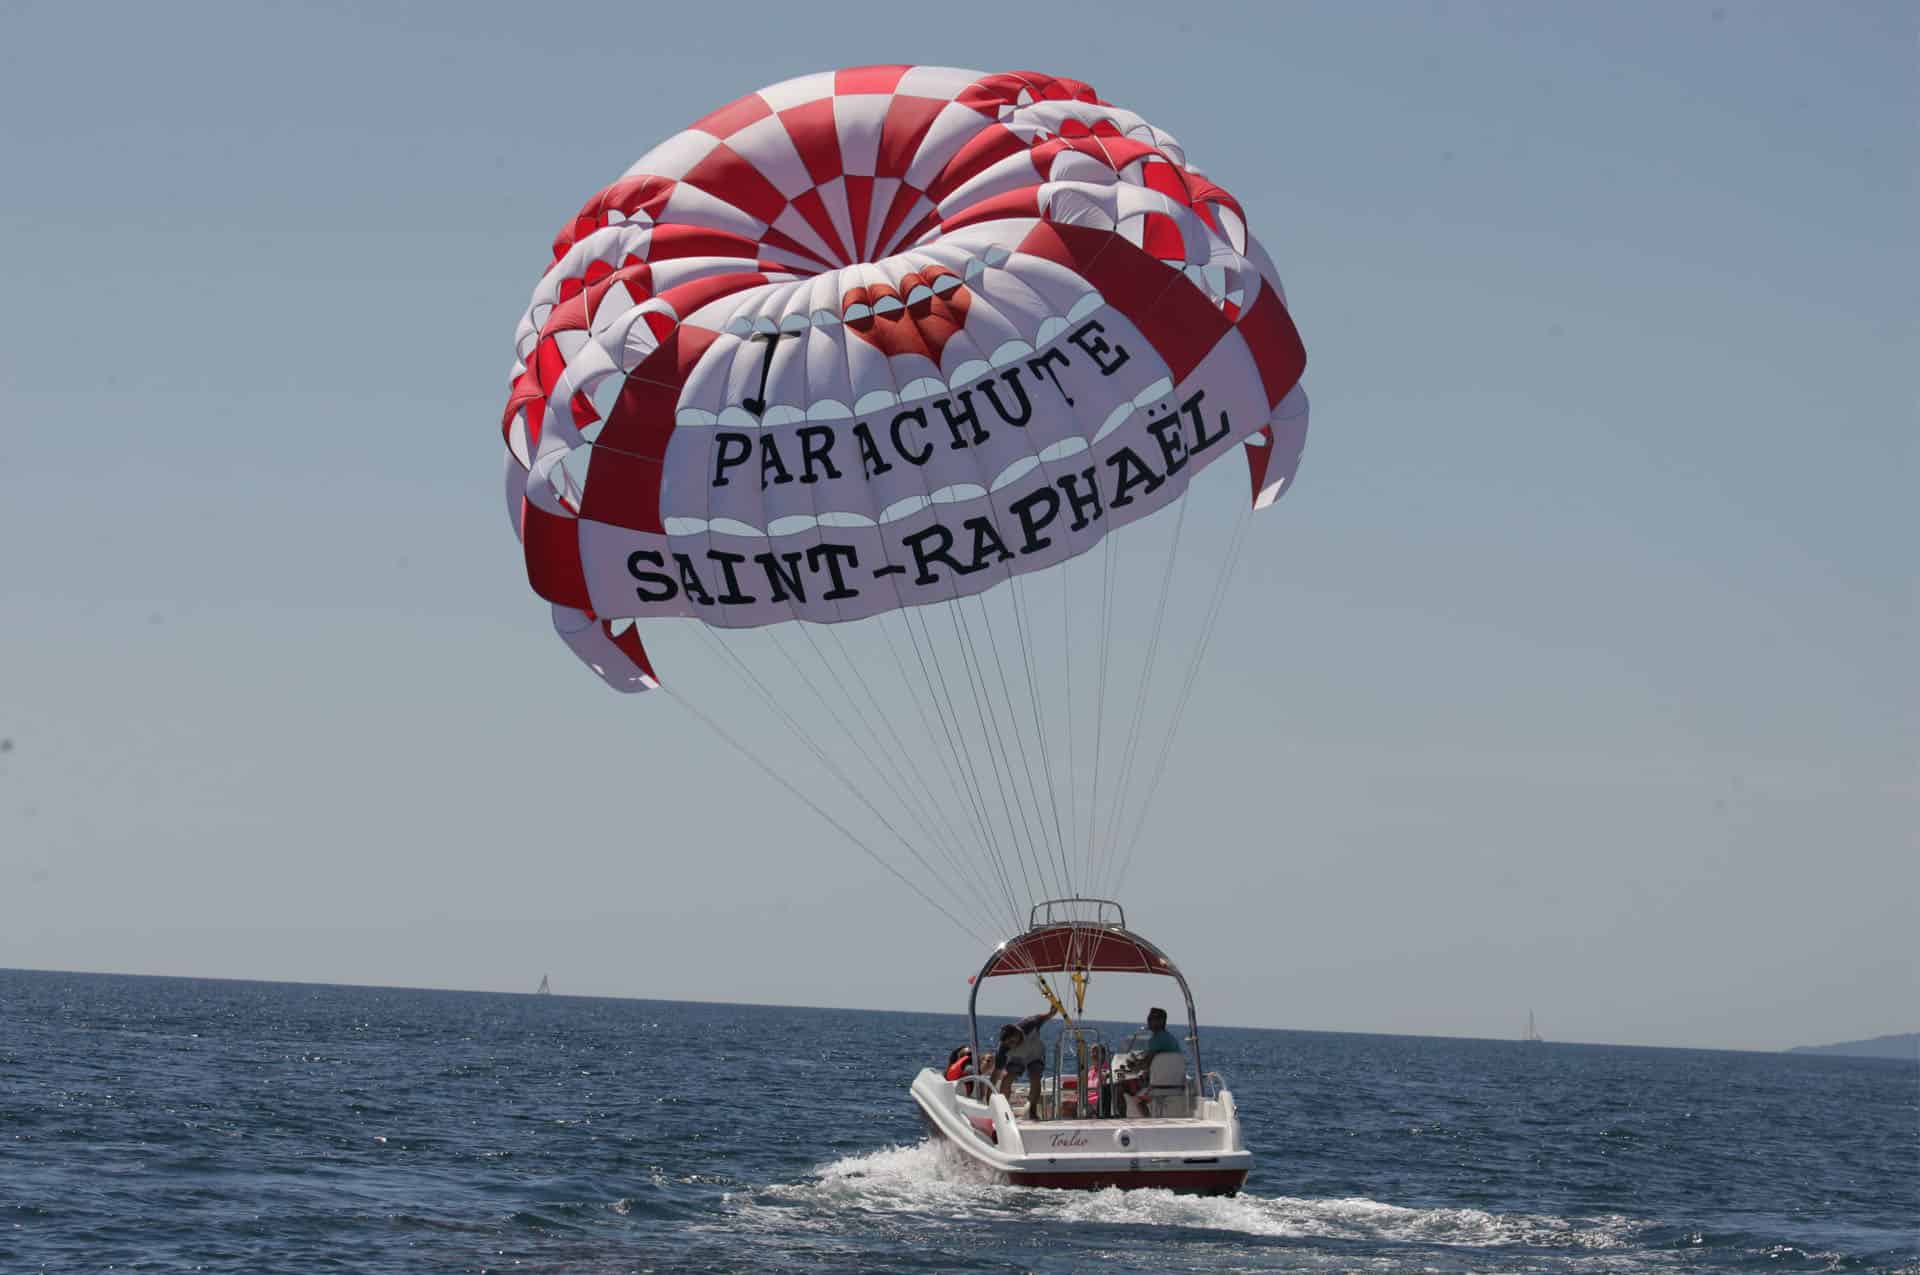 parachute Saint raphael